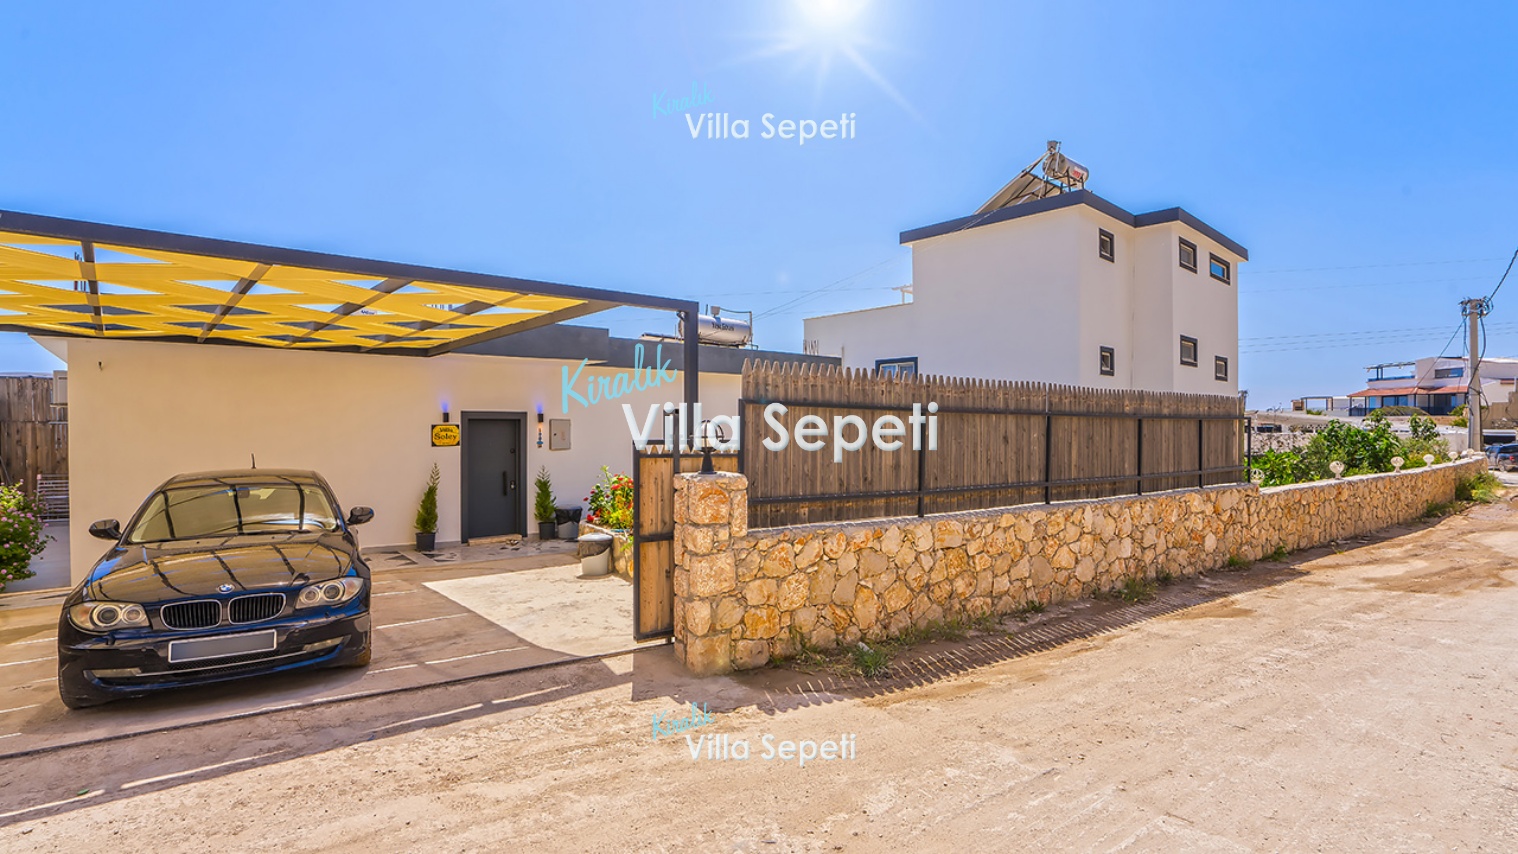 Villa Soley